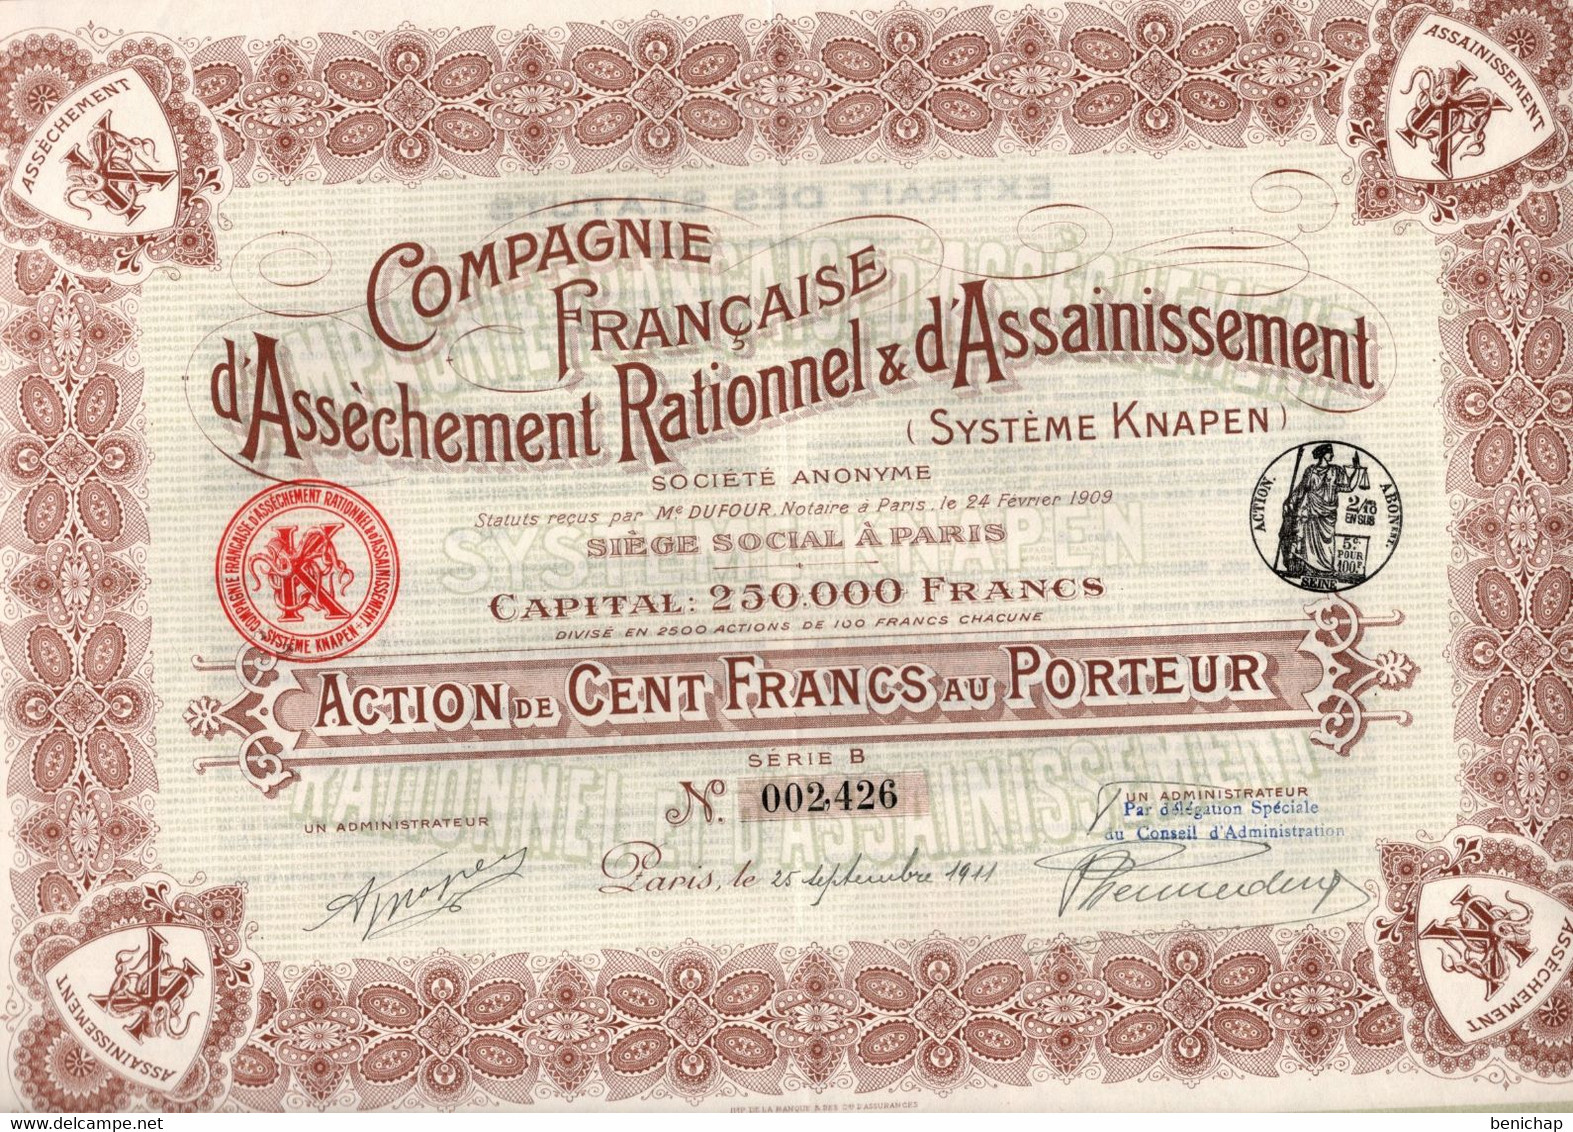 Action De 100 Frcs Au Porteur - Compagnie Française D'Assèchement Rationnel & D'Assainissement Knapen - Paris 1911 - Agua